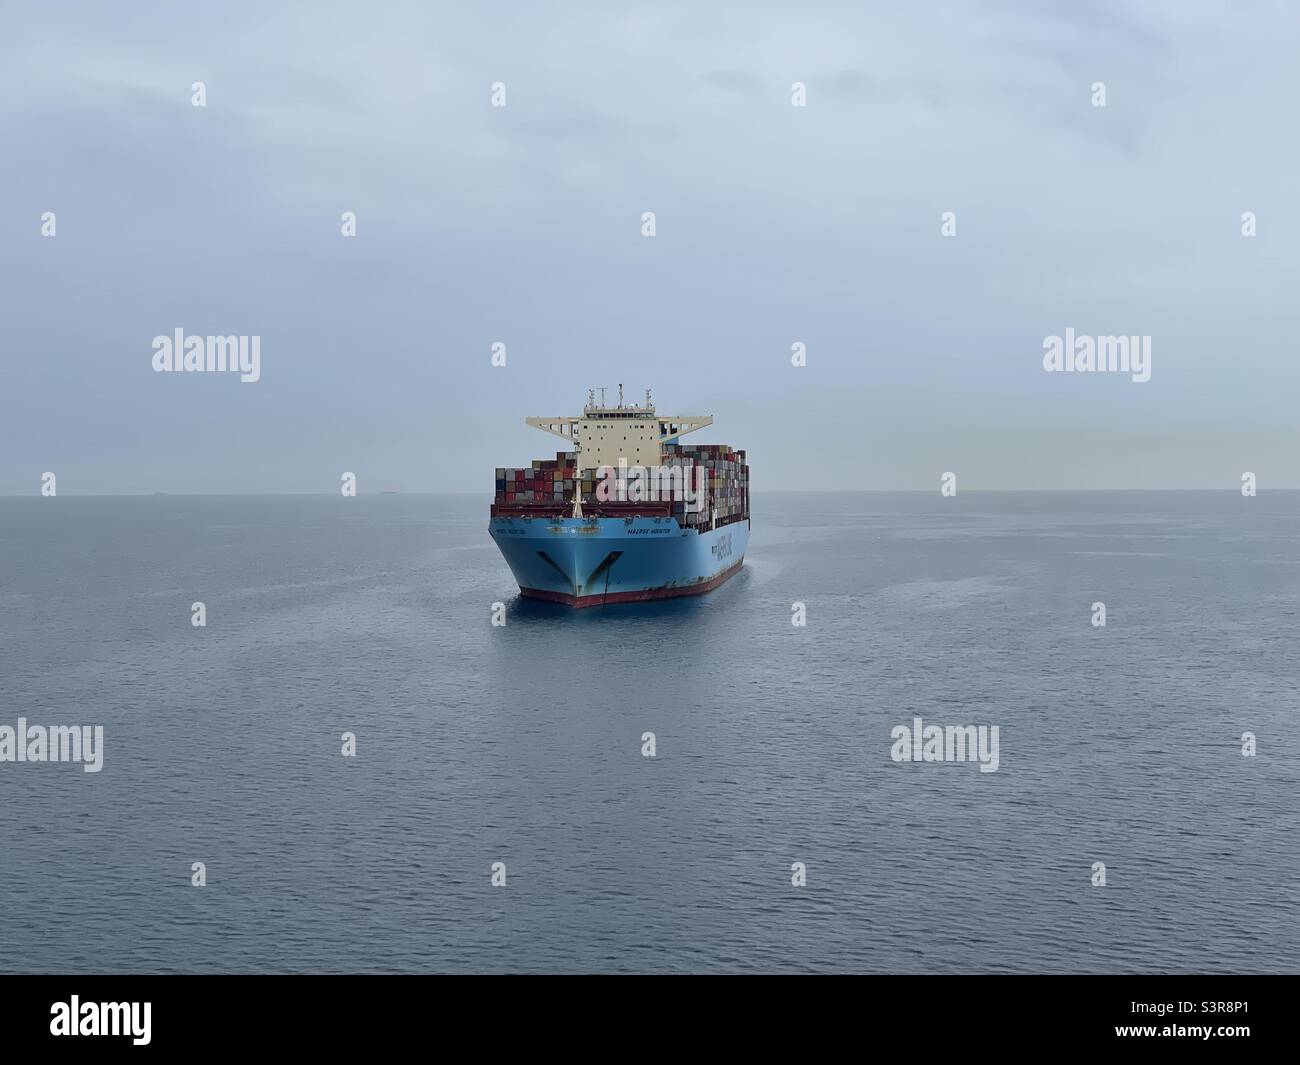 Voll beladenes riesiges Containerschiff mit blauem Rumpf von der Reederei Maersk, das bei regnerischem Wetter auf ruhigem Meer vor Anker liegt. Stockfoto